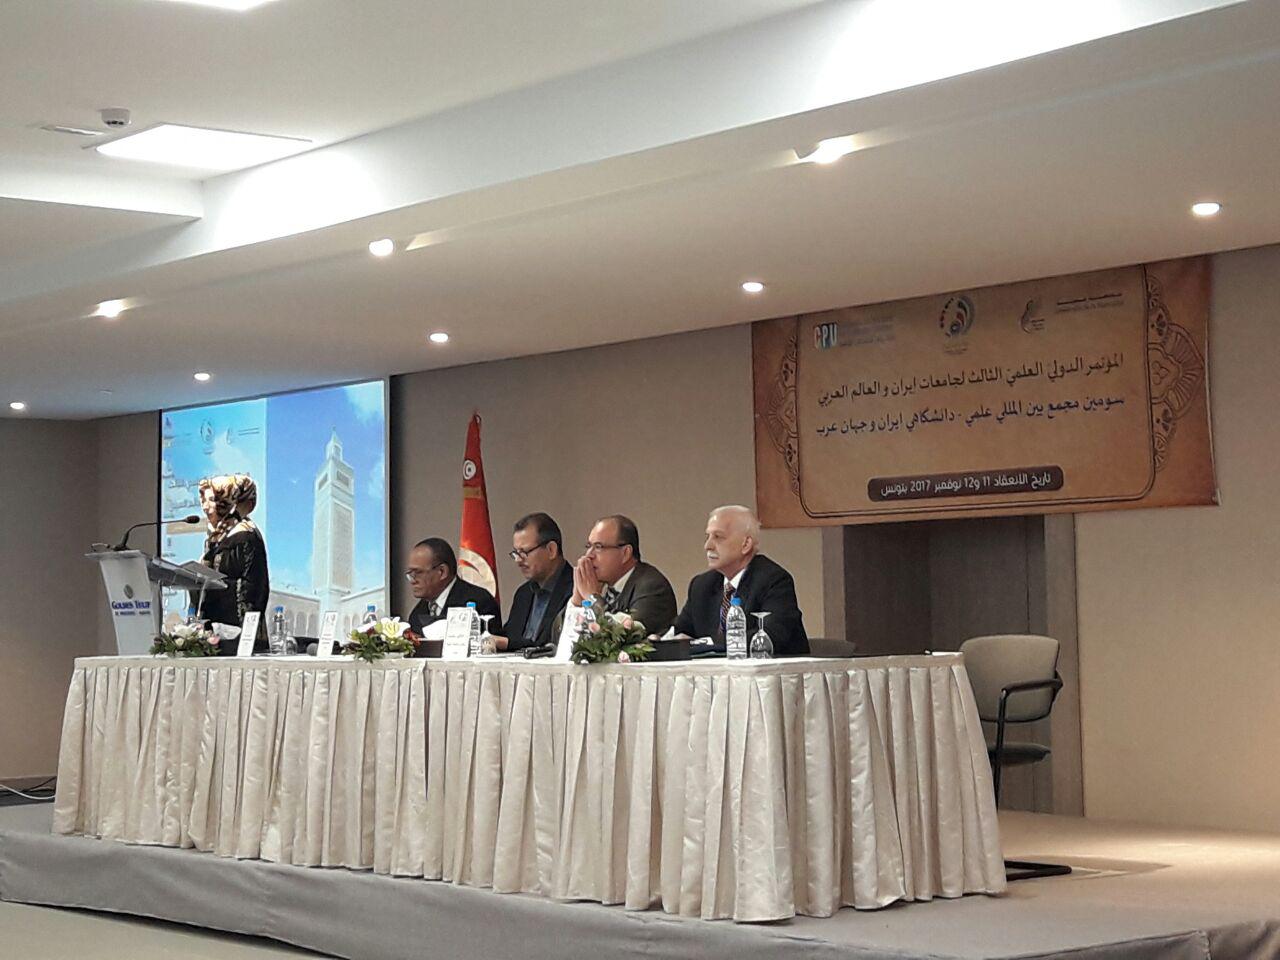 إنطلاق فعاليات المؤتمر الدولي العلمي الثالث لجامعات إيران والعالم العربي